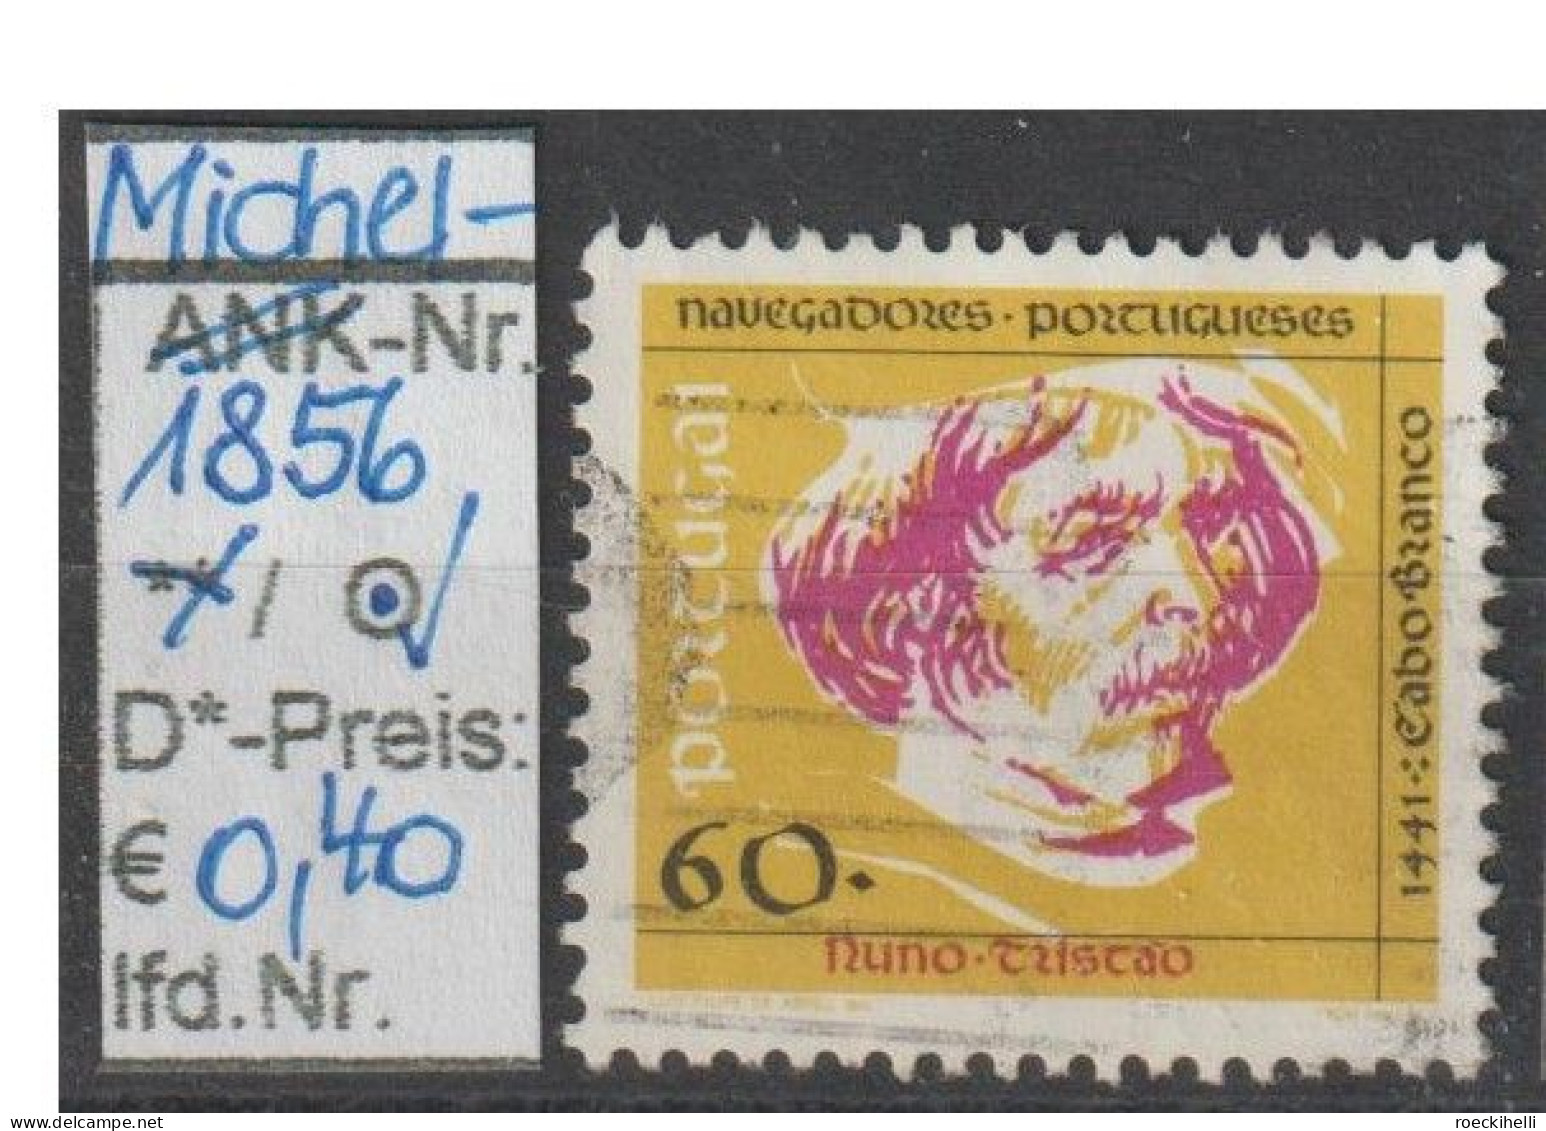 1991 - PORTUGAL - FM/DM "Portug. Seefahrer - Nuno Tristao" 60 E Mehrf. - O Gestempelt - S.Scan (port 1856o) - Used Stamps